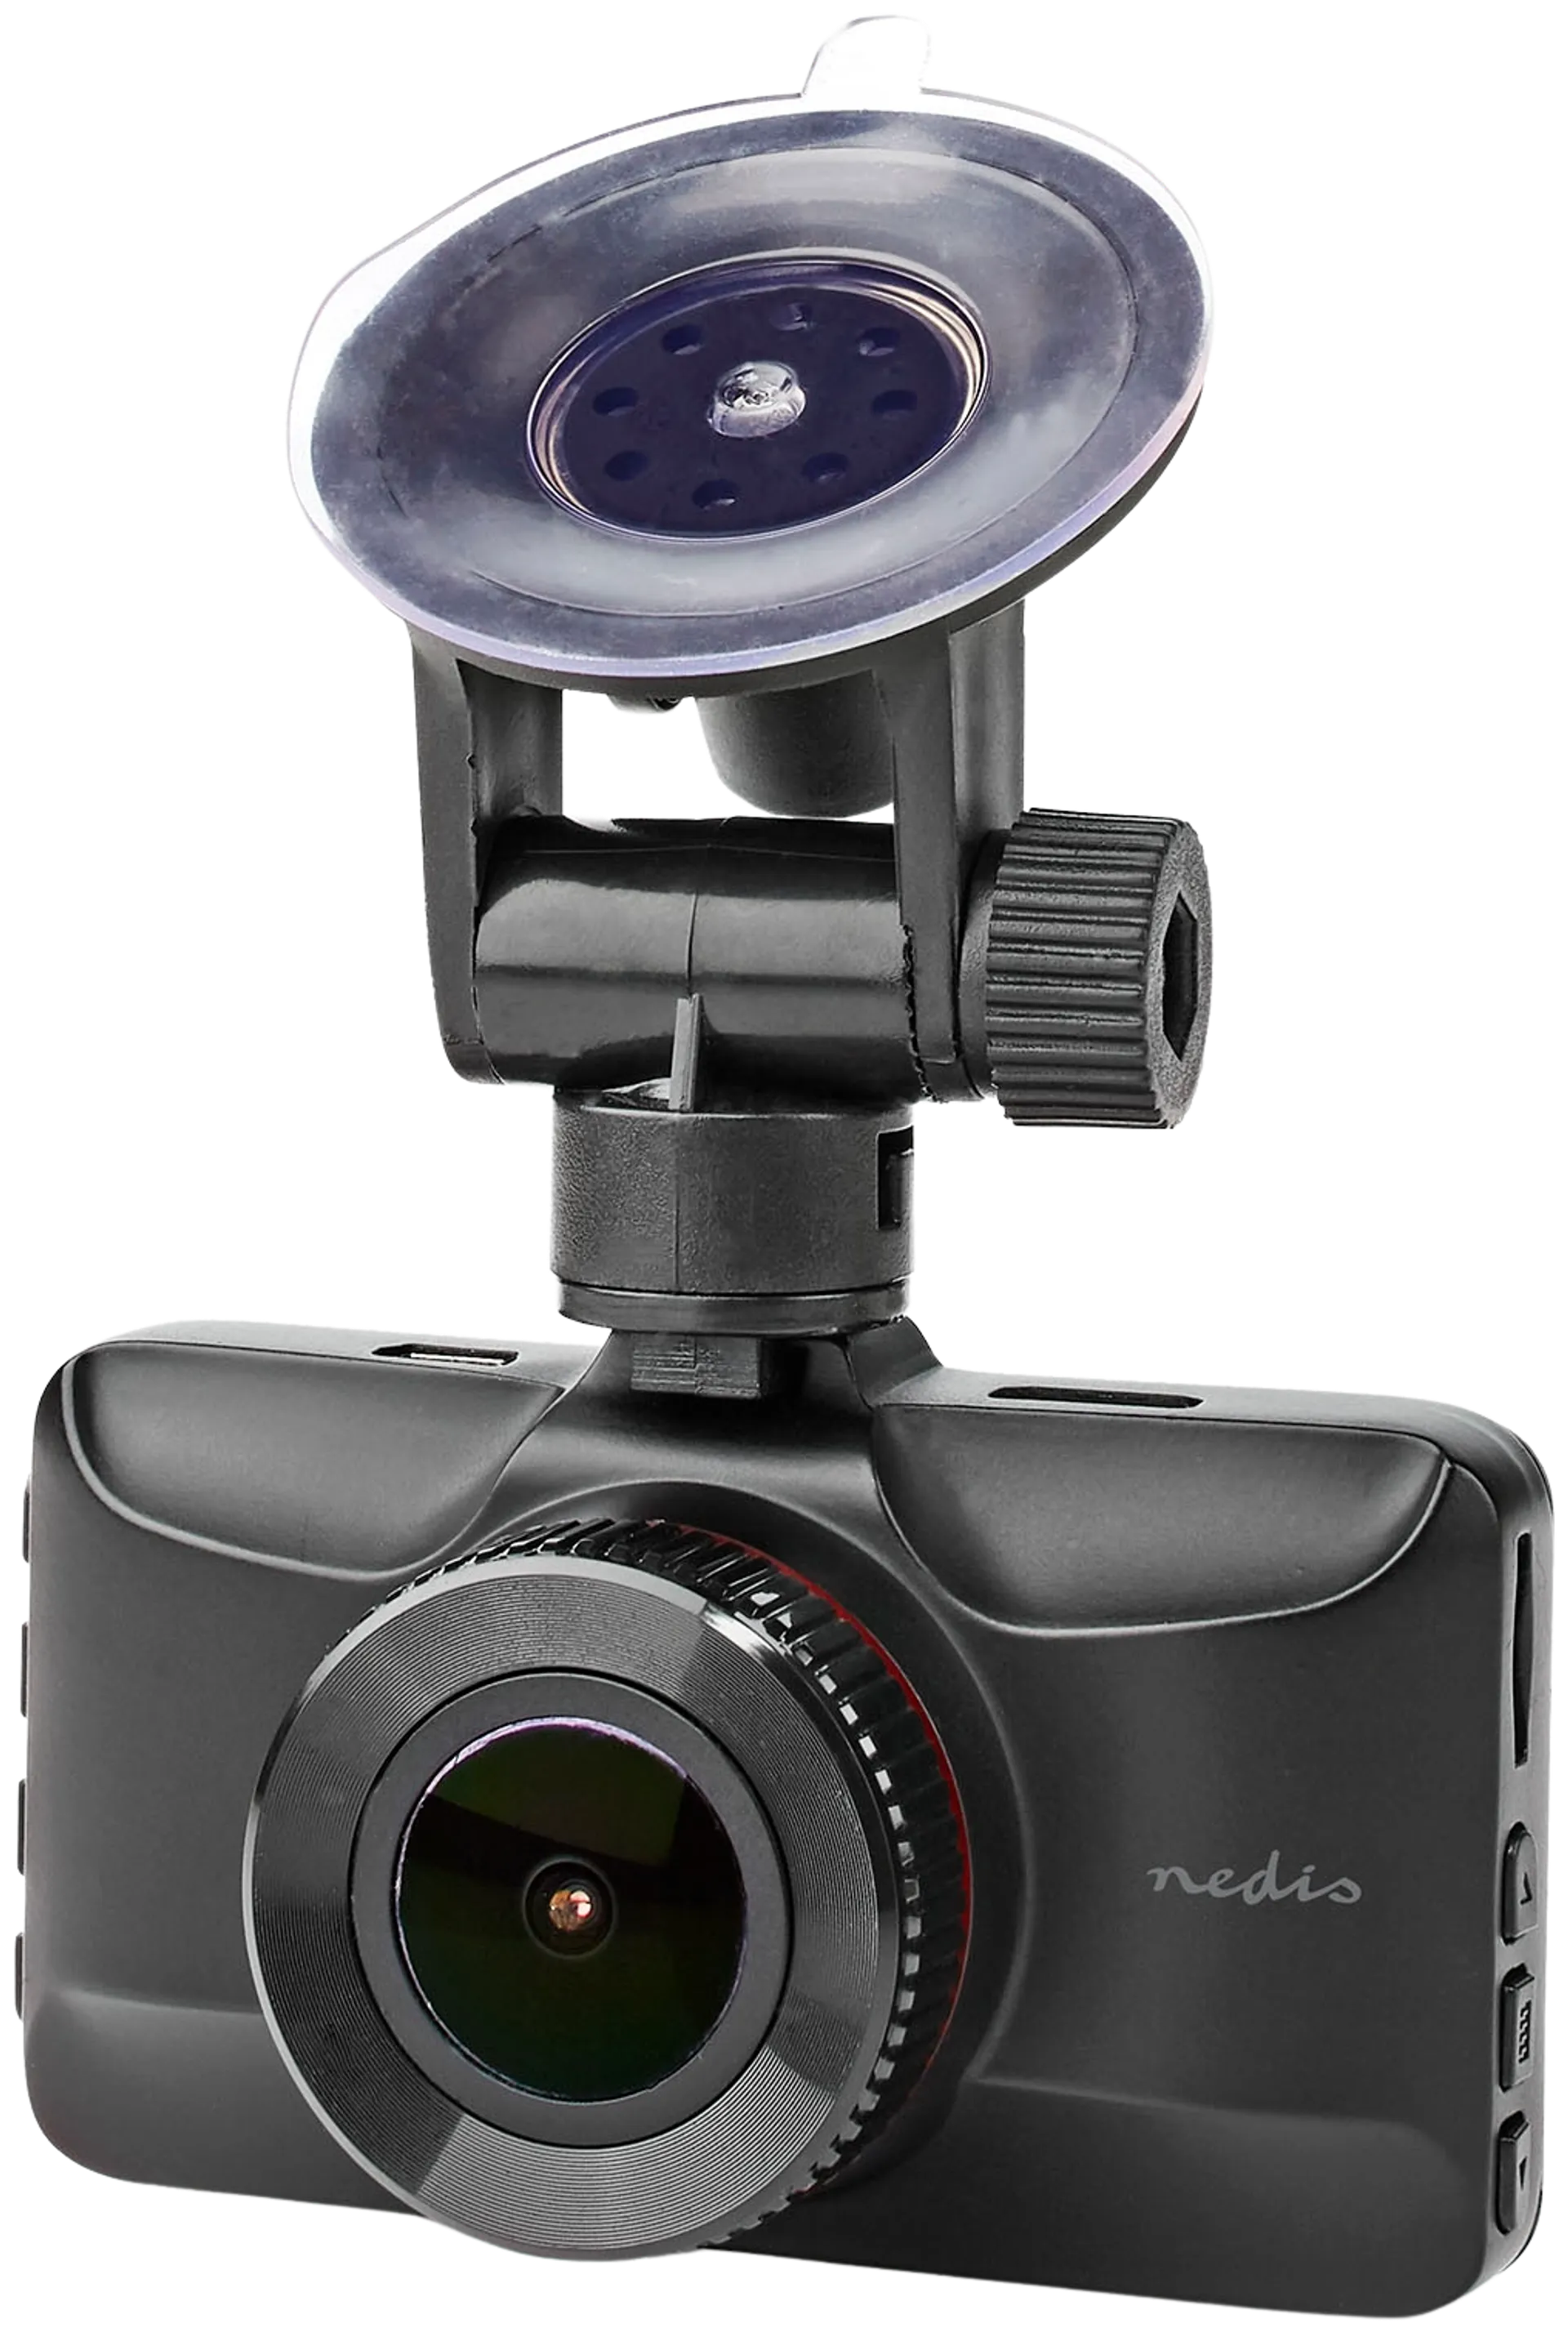 Nedis Autokamera DCAM15BK 1080p@30fps 12.0 MPixel 3.0 " LCD Musta/Punainen - 7